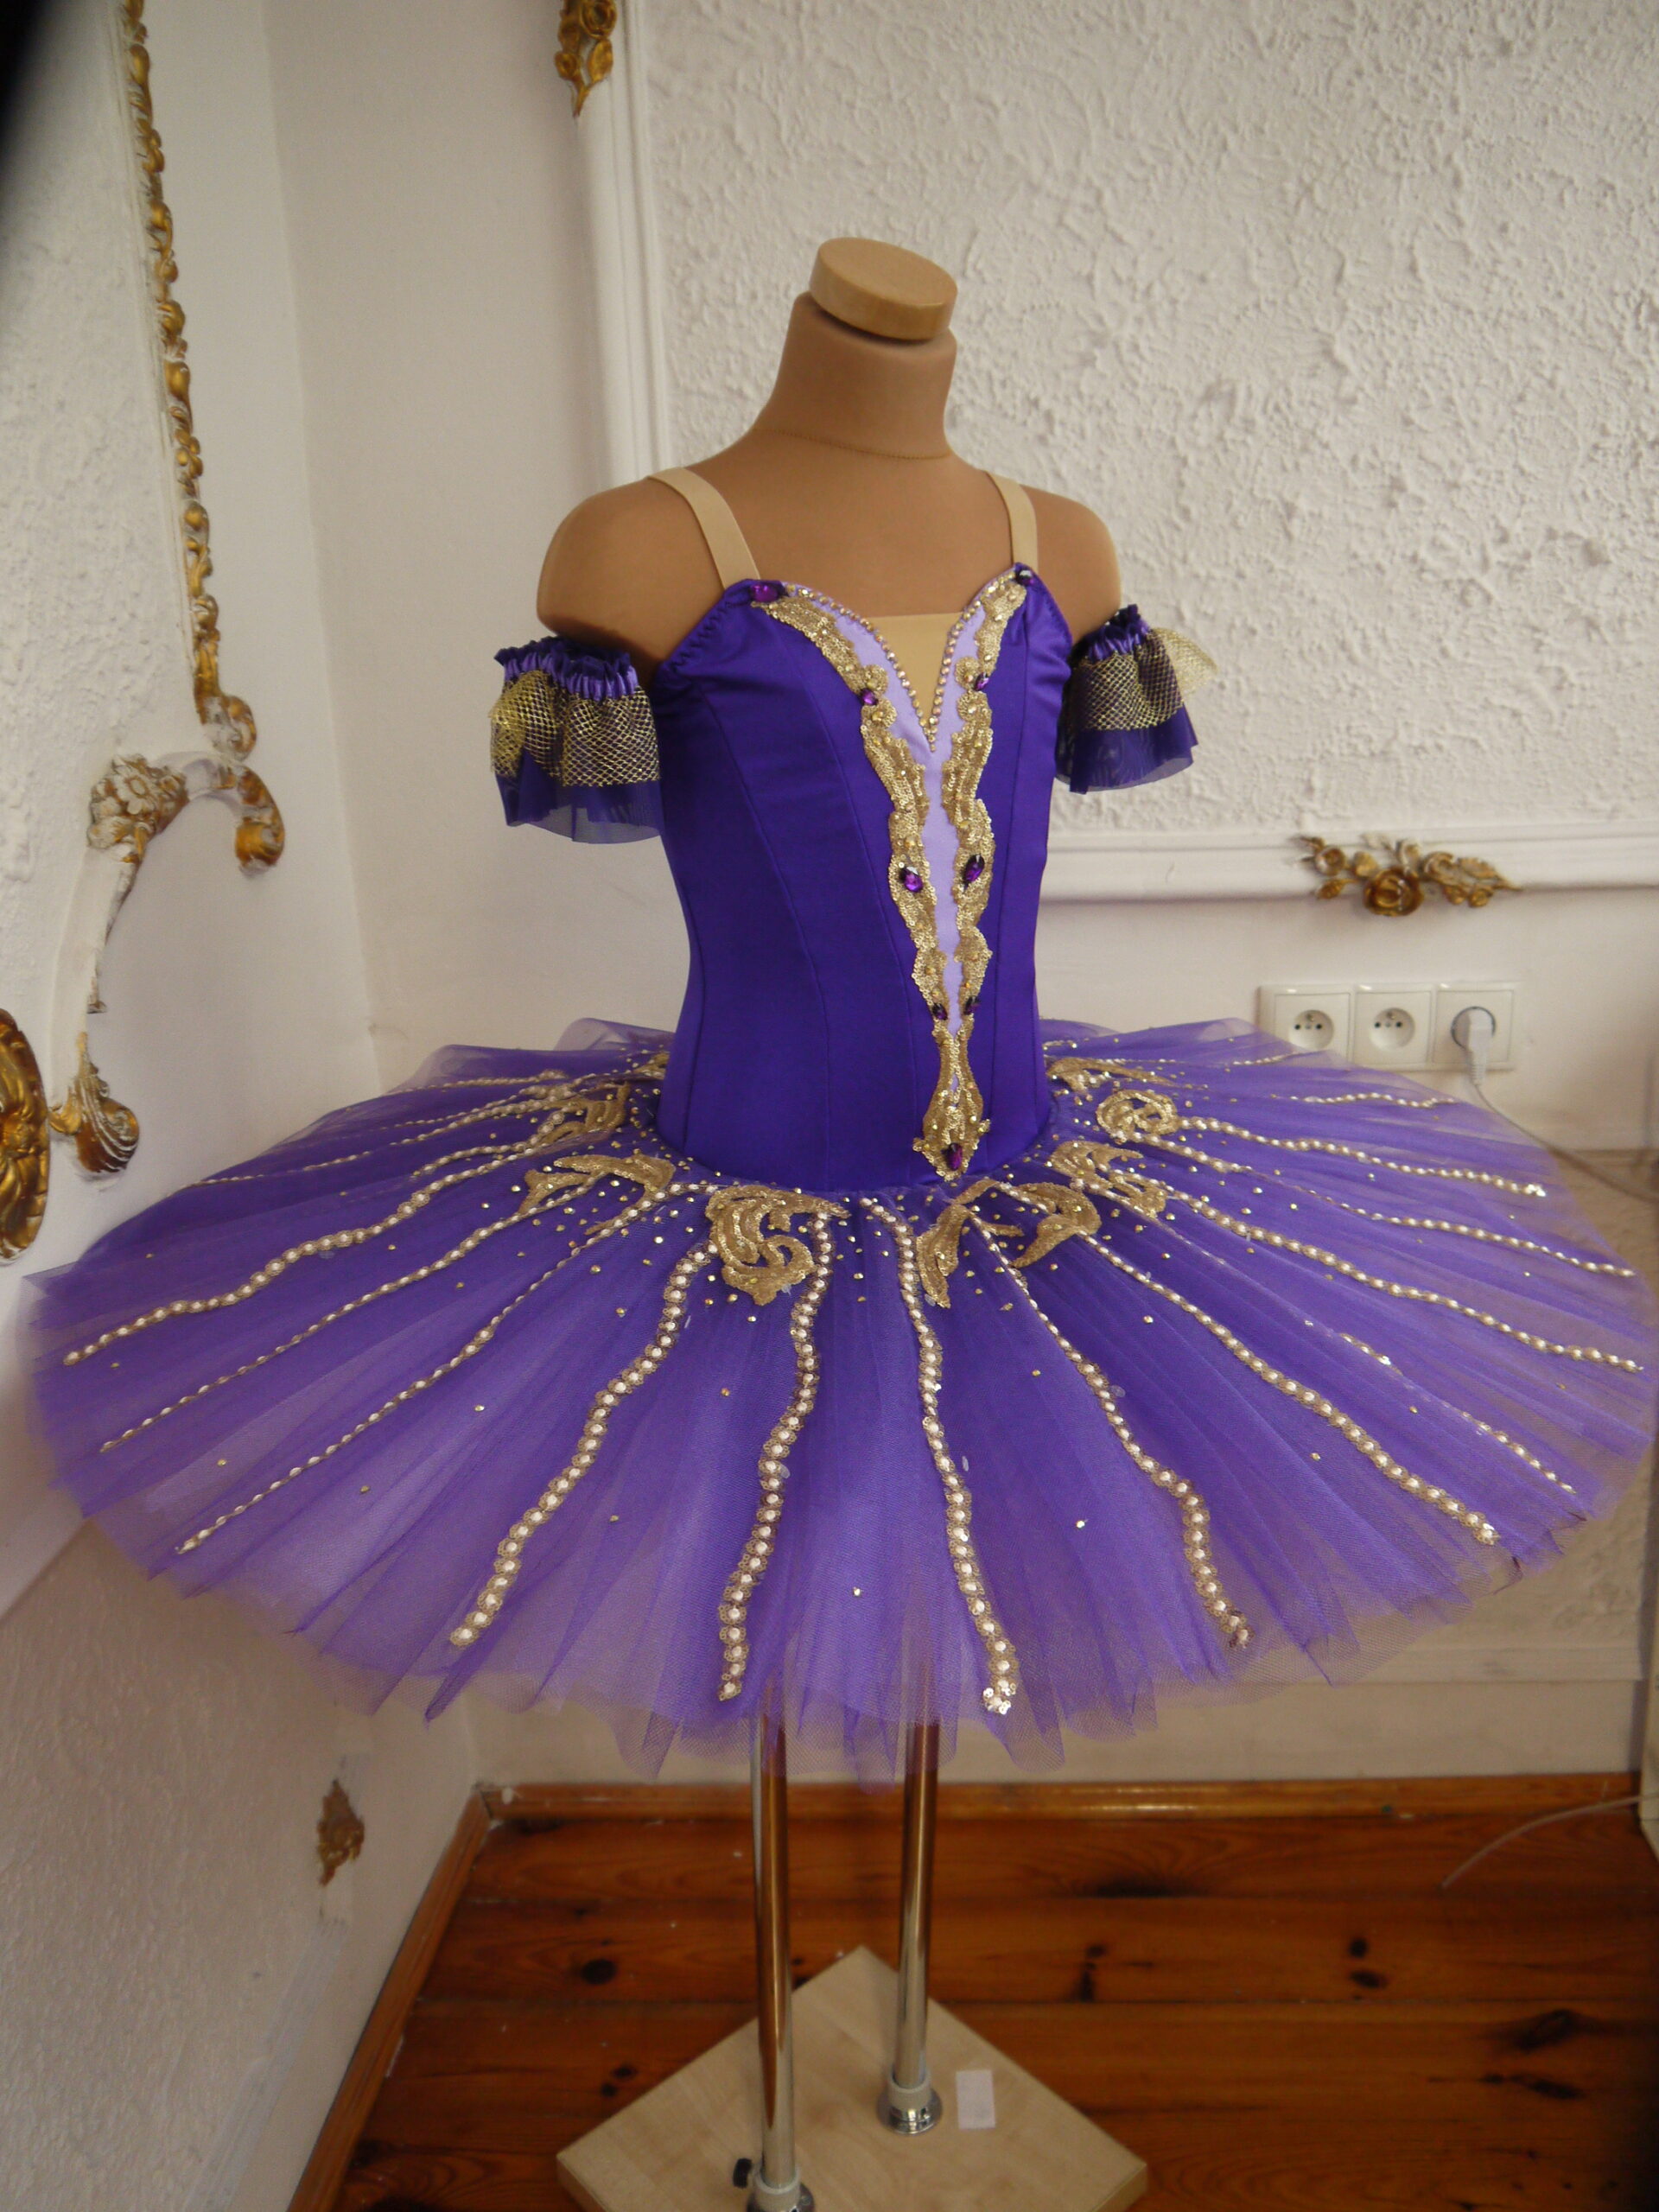 tutu szycie paczka baletowa klasyczna Raymonda Medora Lilac Fairy ballet costumes stroje baletowe